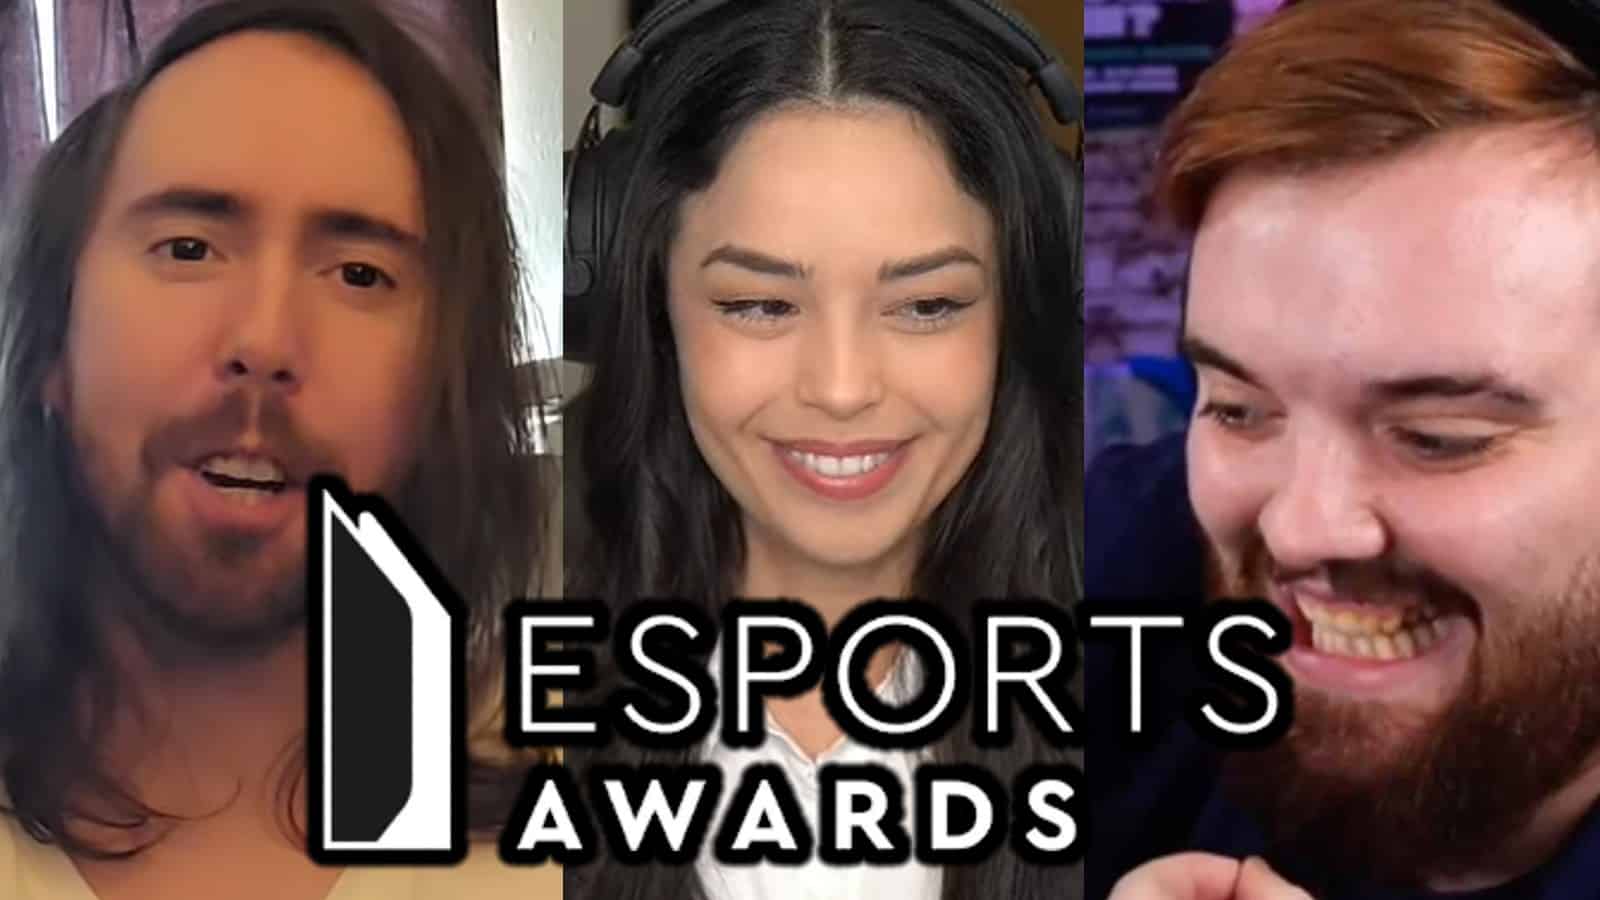 Asmongold, Valkyrae, and Ibai streaming with Esports Awards logo